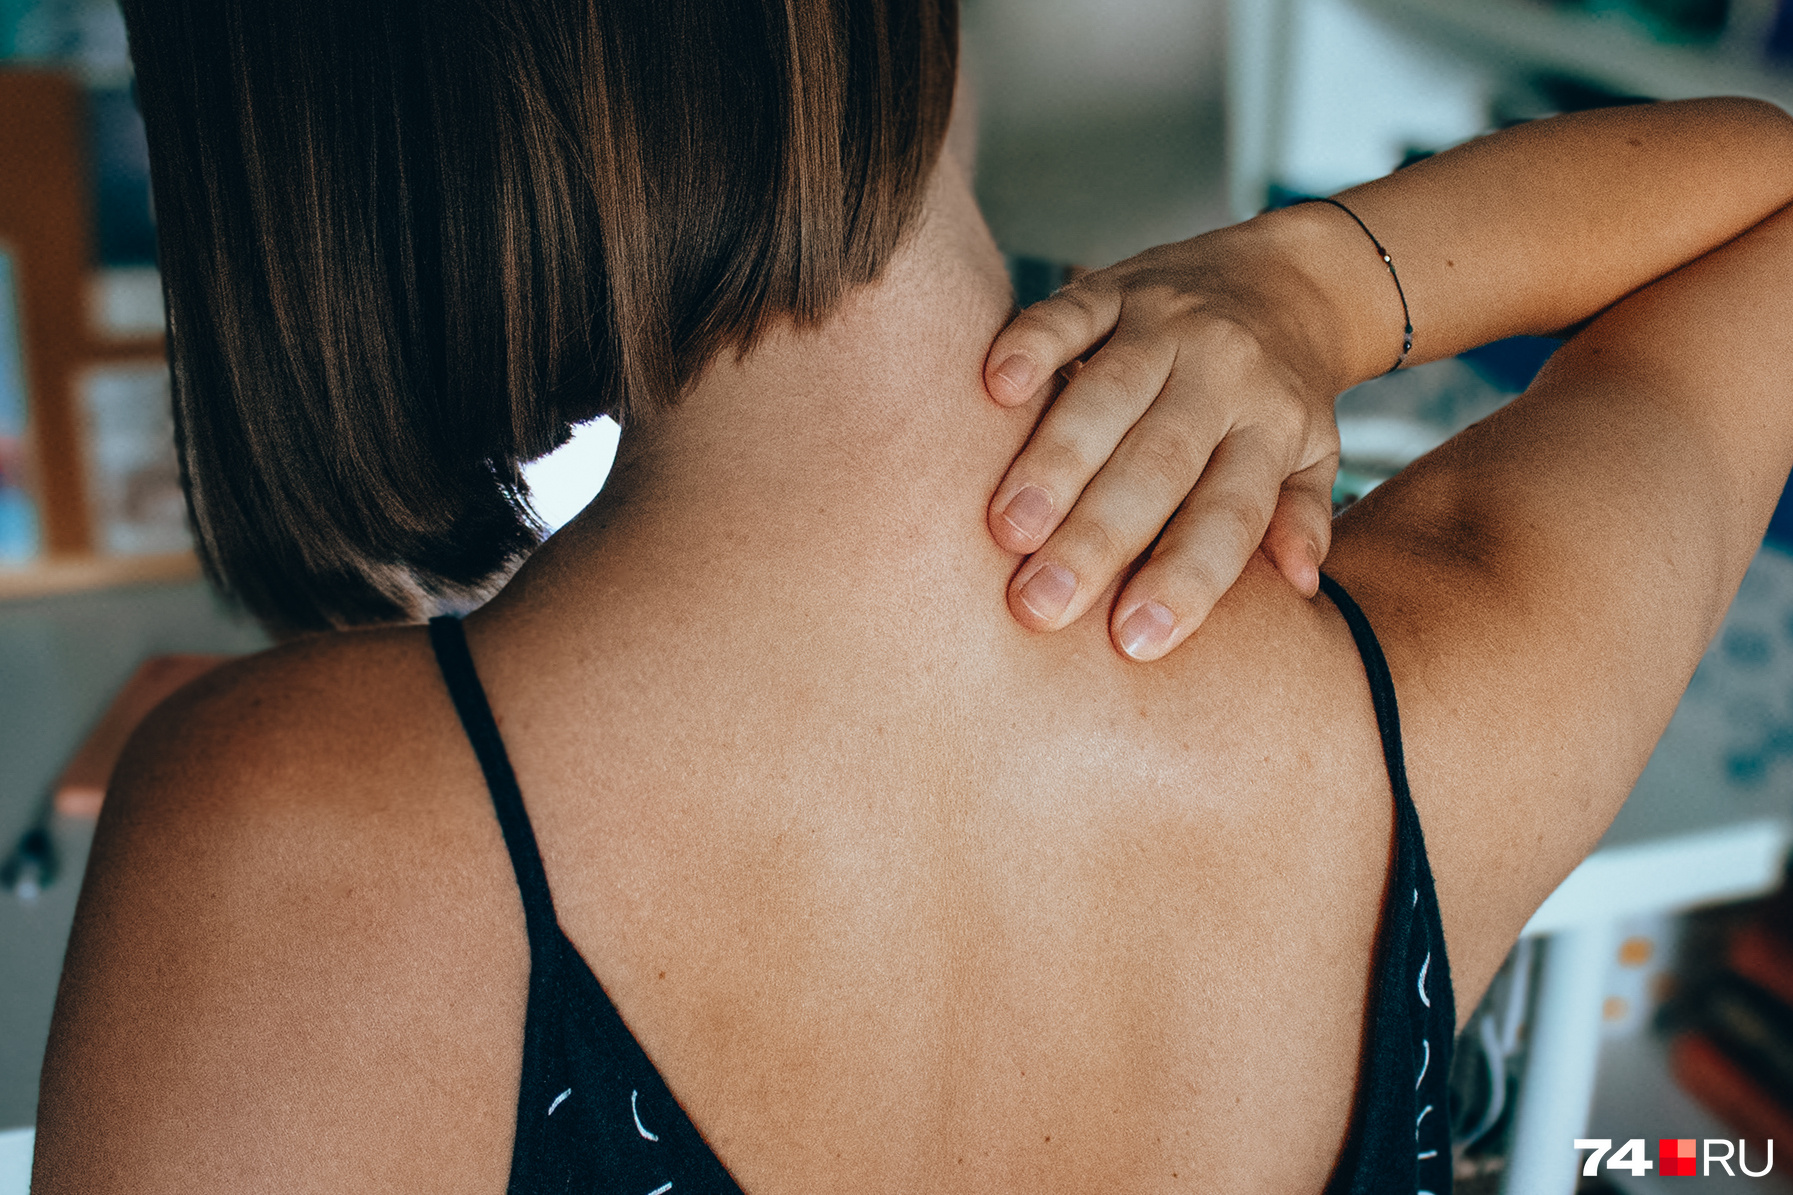 Как избавиться от боли при остеохондрозе: первая помощь при боли в спине -  7 июня 2022 - НГС24